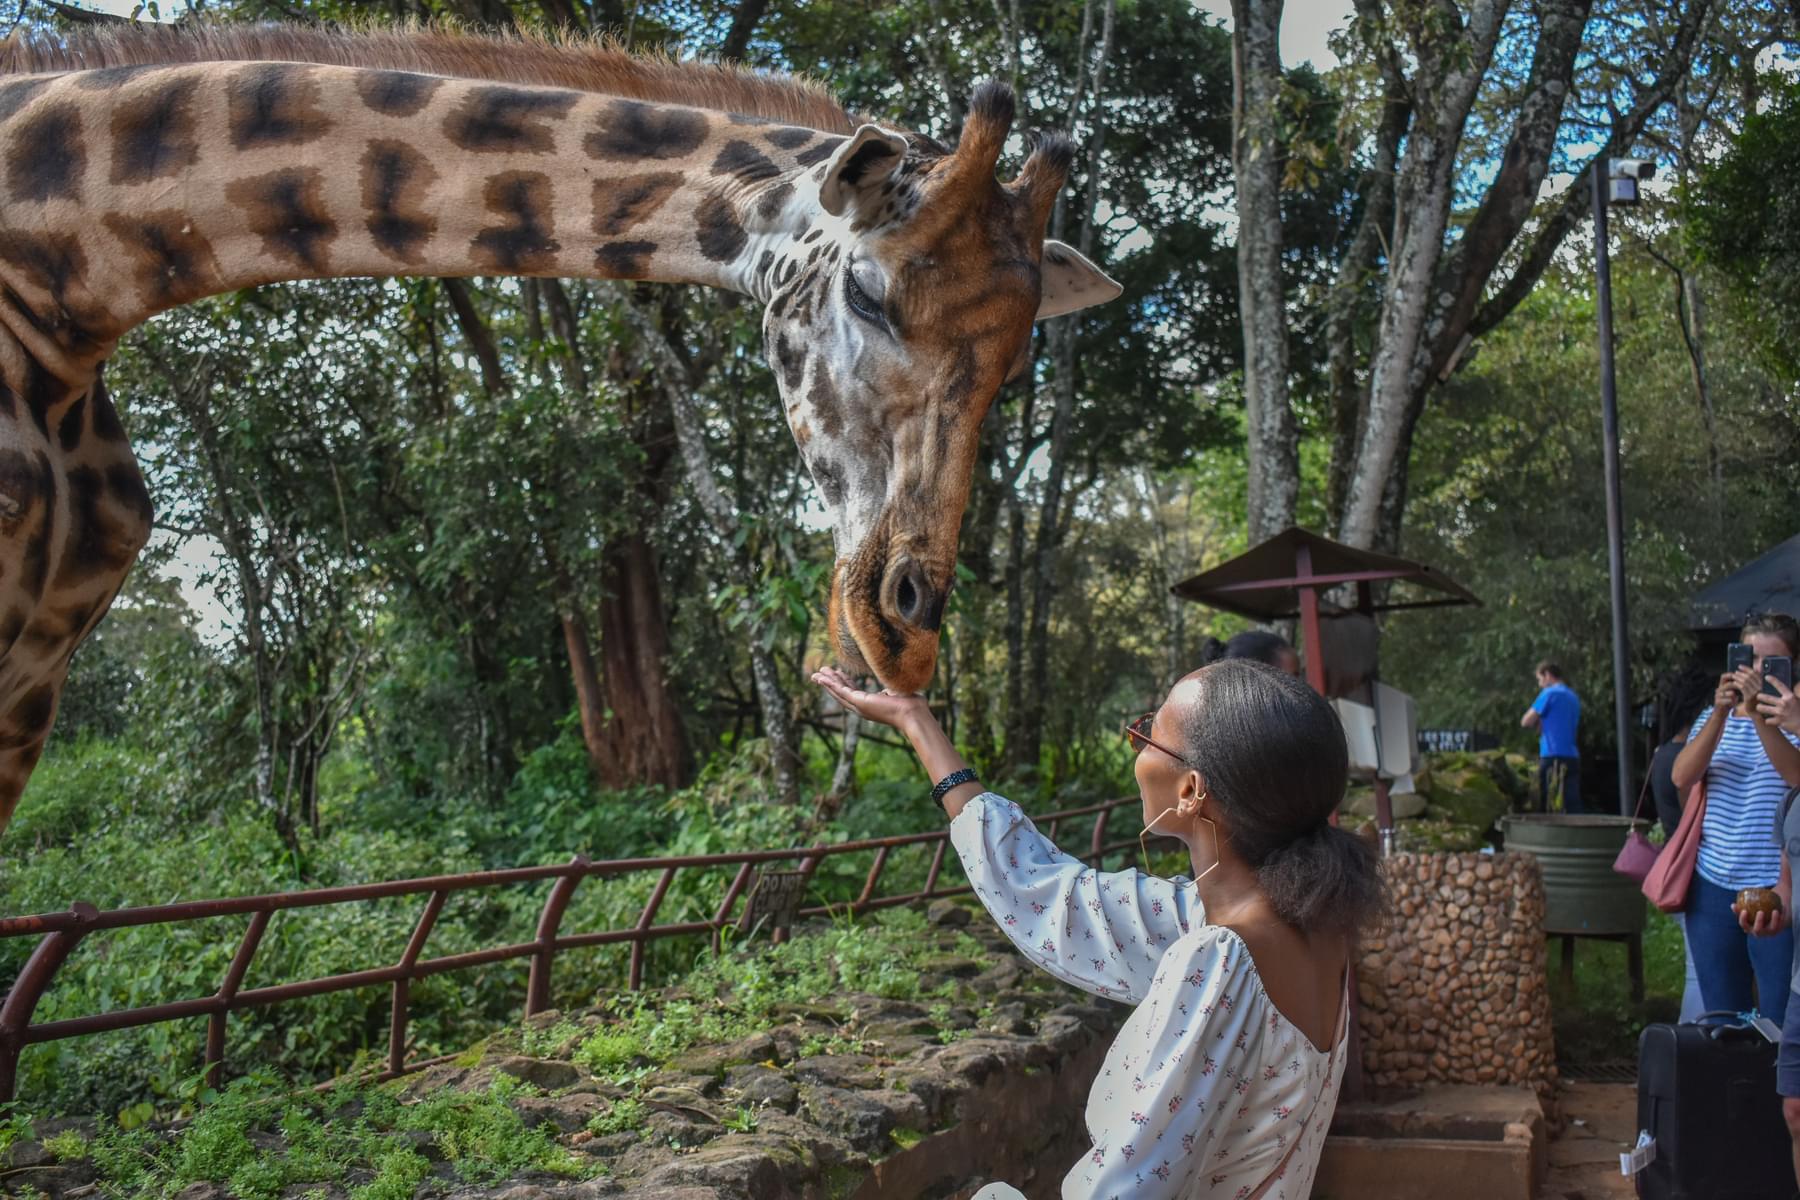 Feed the Giant Giraffe